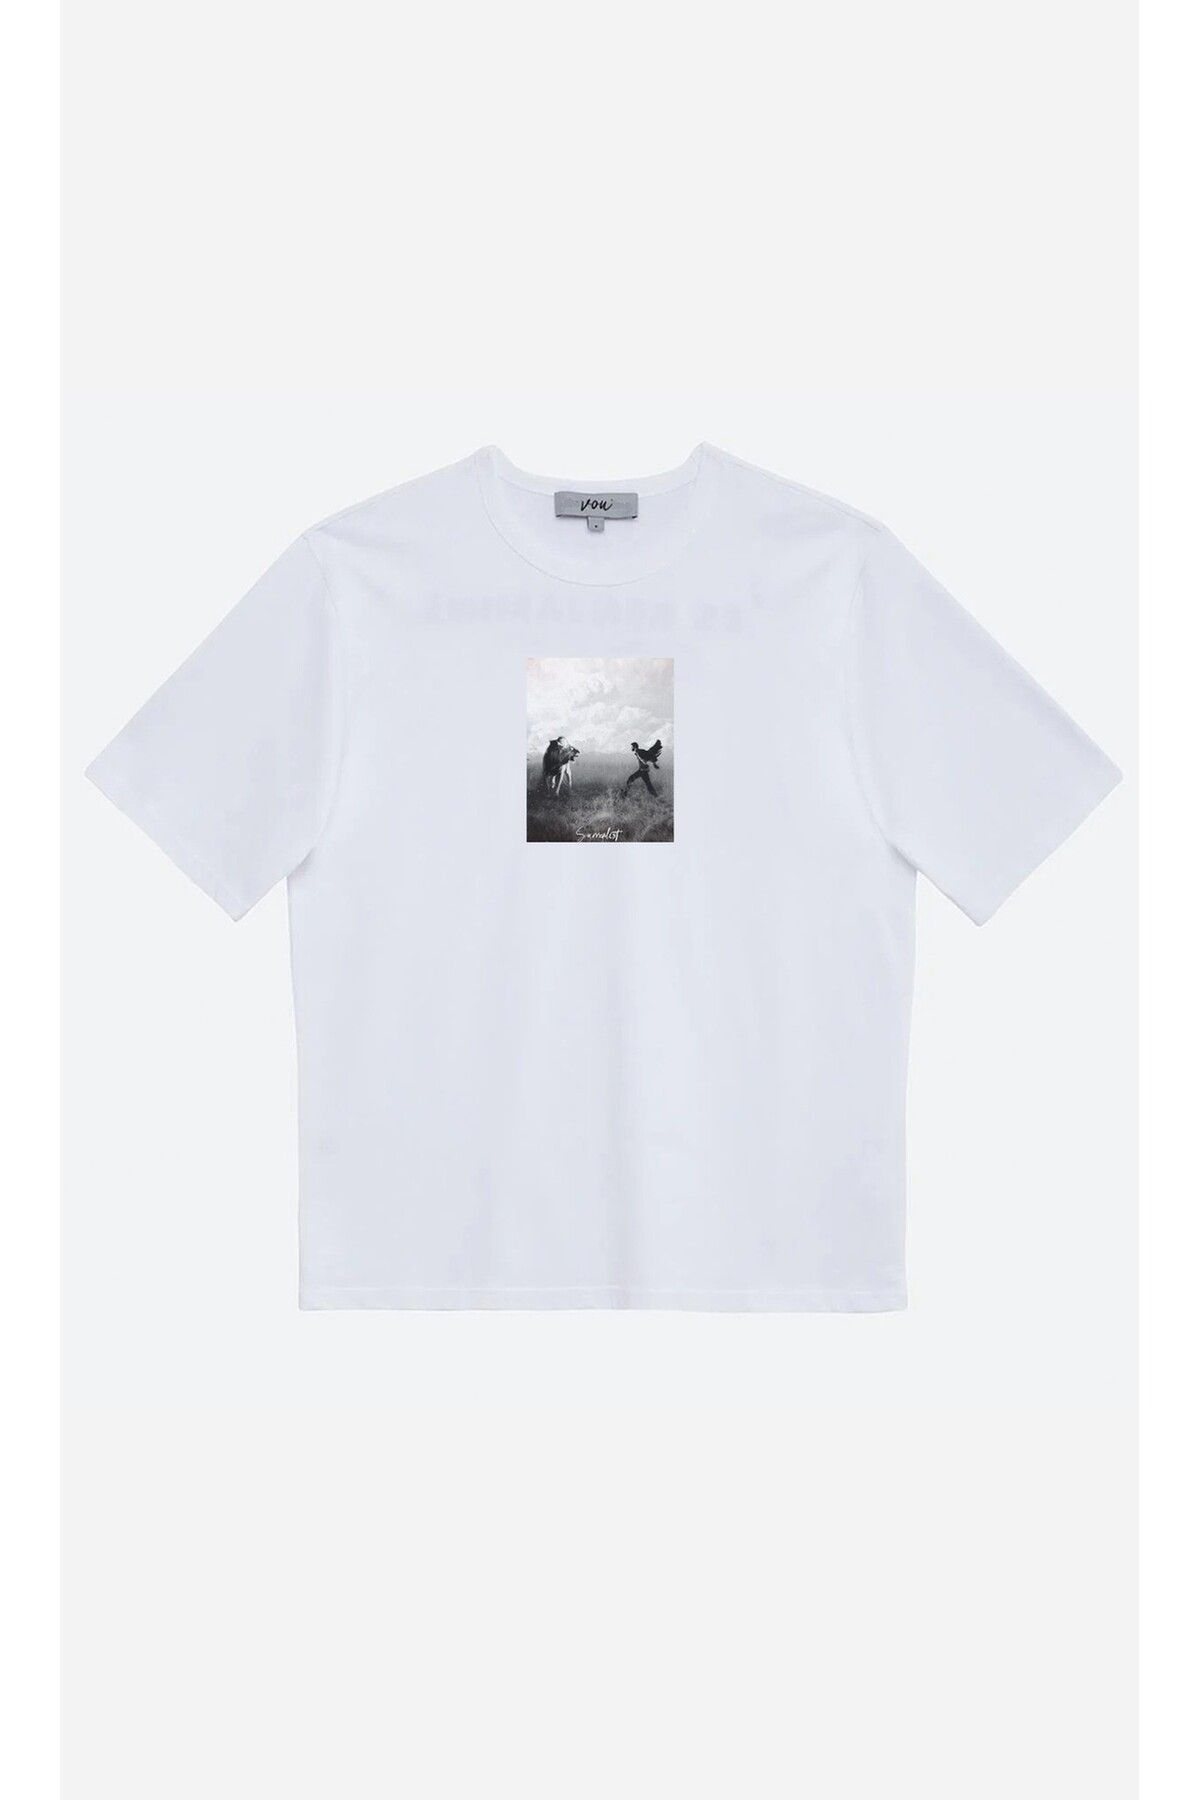 VOU 1055- Surrealist Oversize Unisex T-Shirt